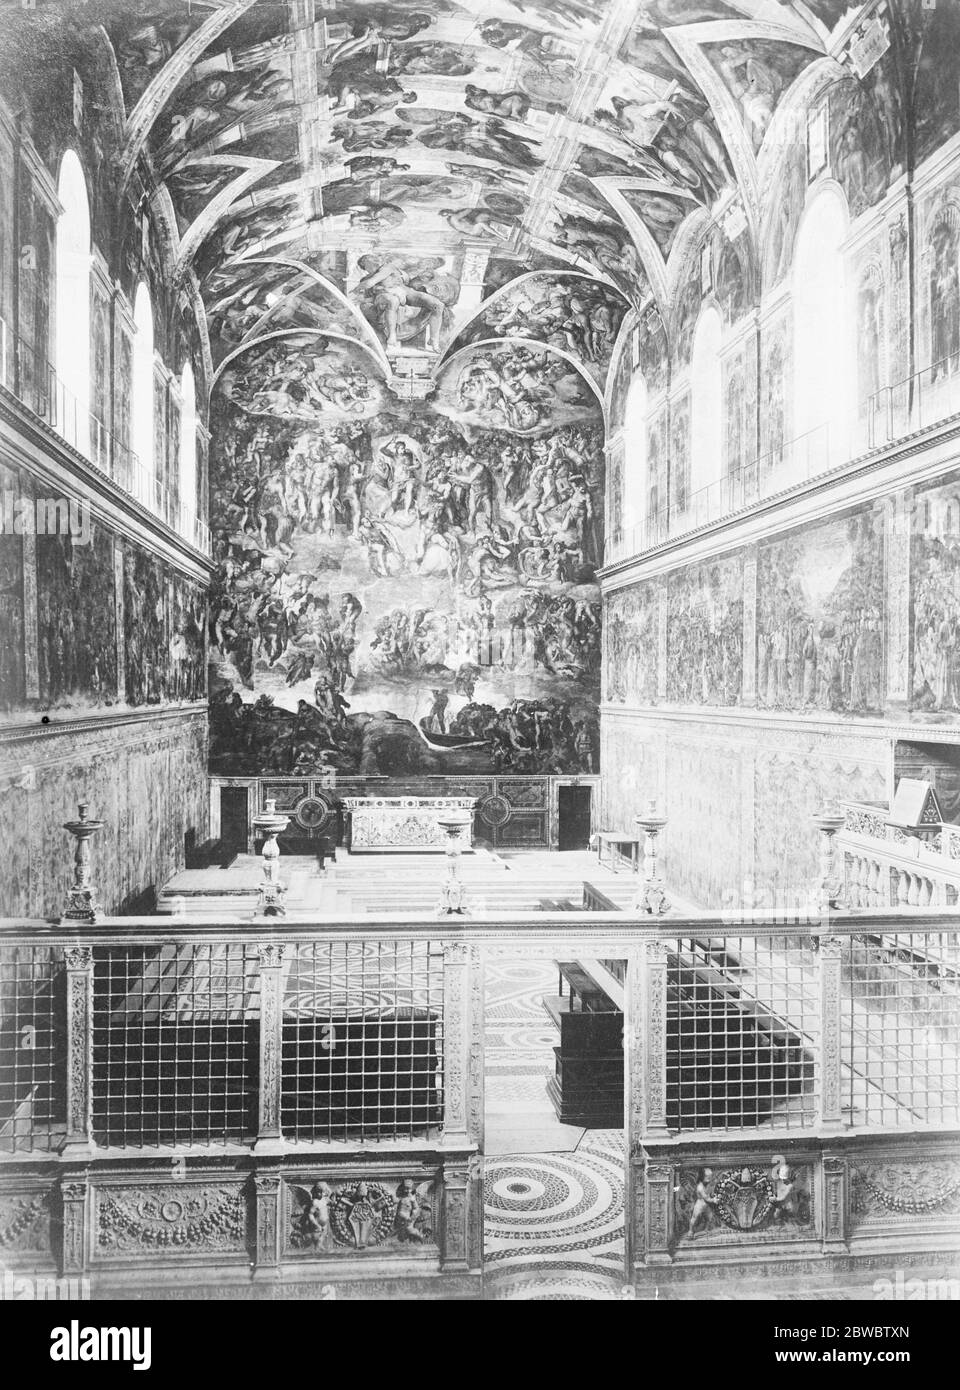 La chapelle Sixtine du Vatican a déclaré être en danger de subsidence . Une vue saisissante sur la chapelle Sixtine . 18 novembre 1926 Banque D'Images